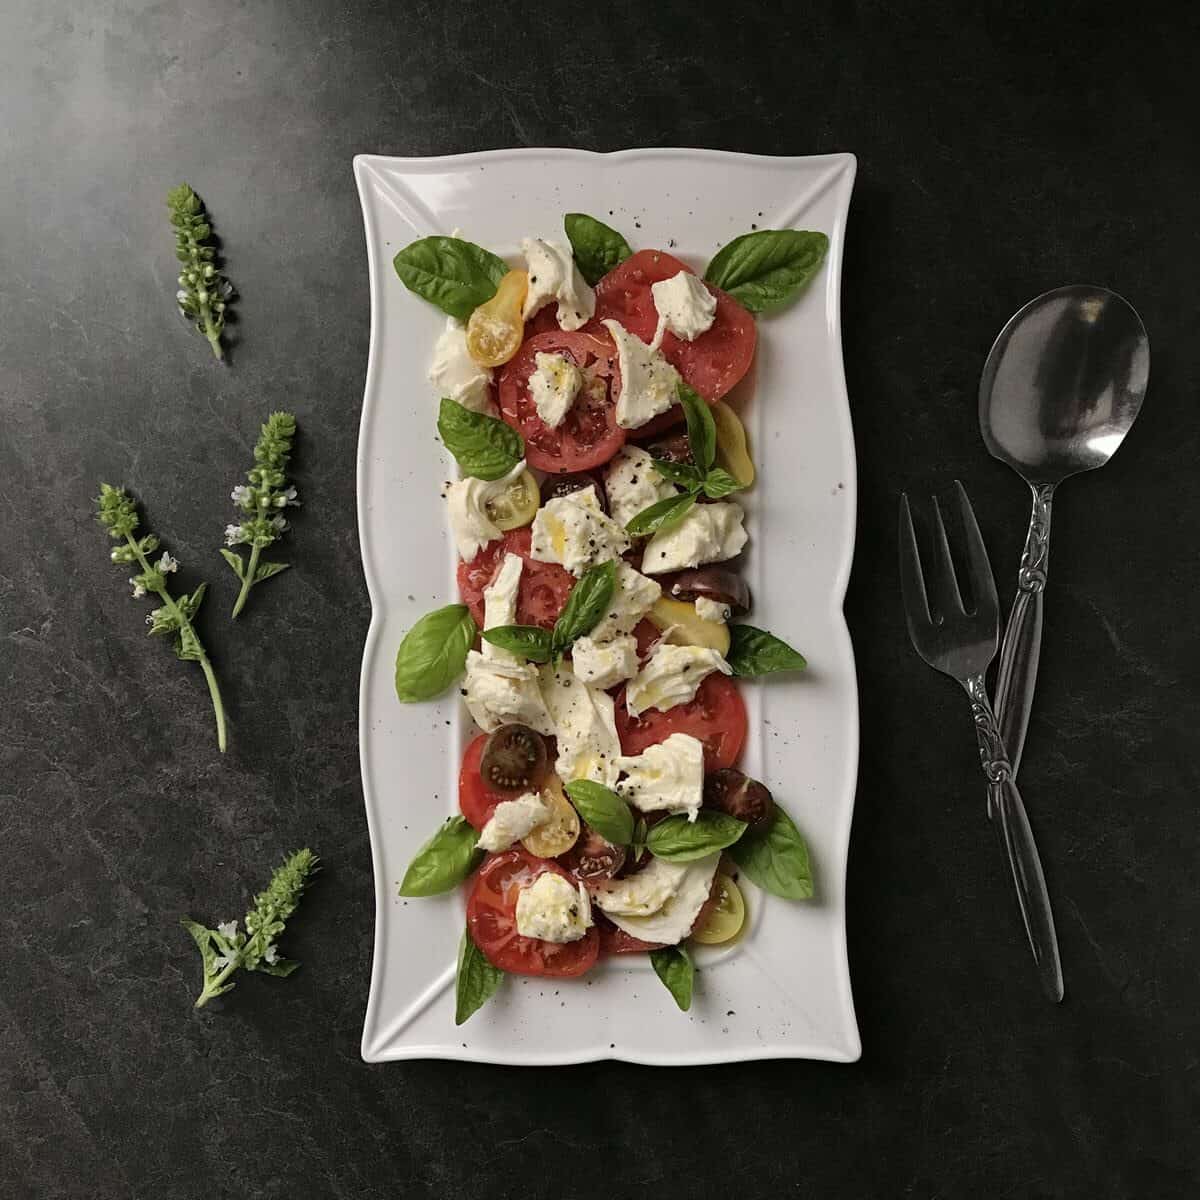 A mozzarella, basil and tomato salad aka caprese in white serving dish.